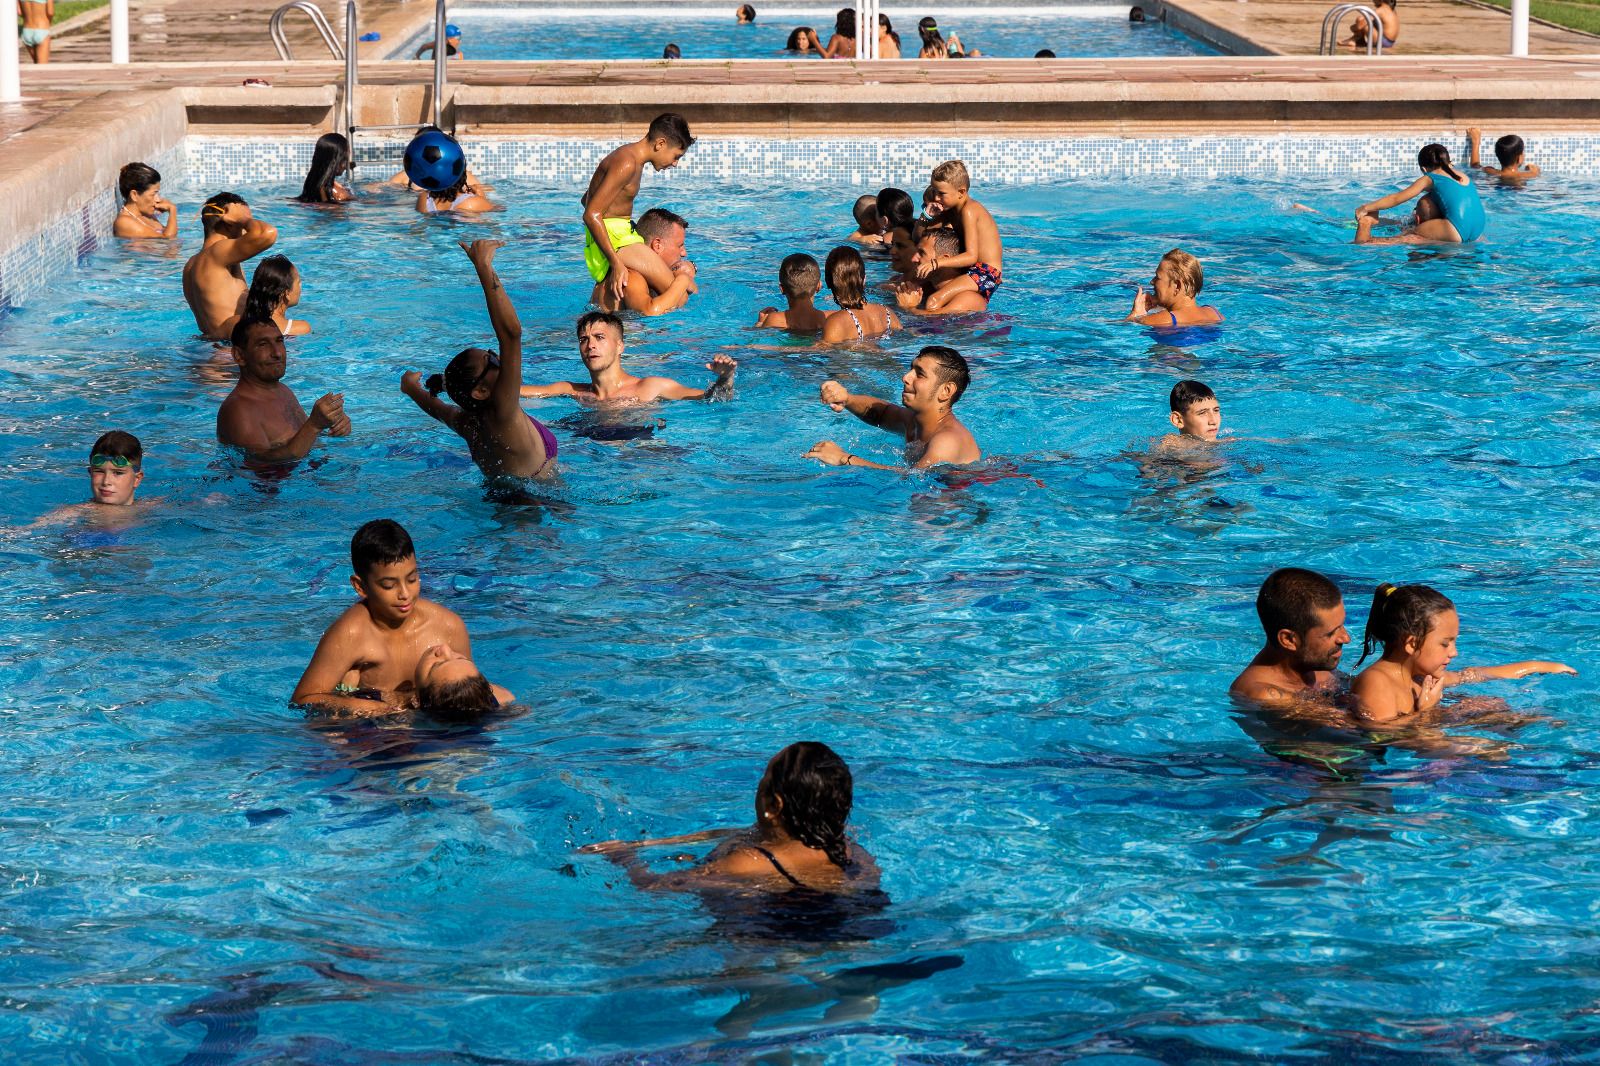 La piscina de Silla, gratis en la ola de calor, repleta de gente